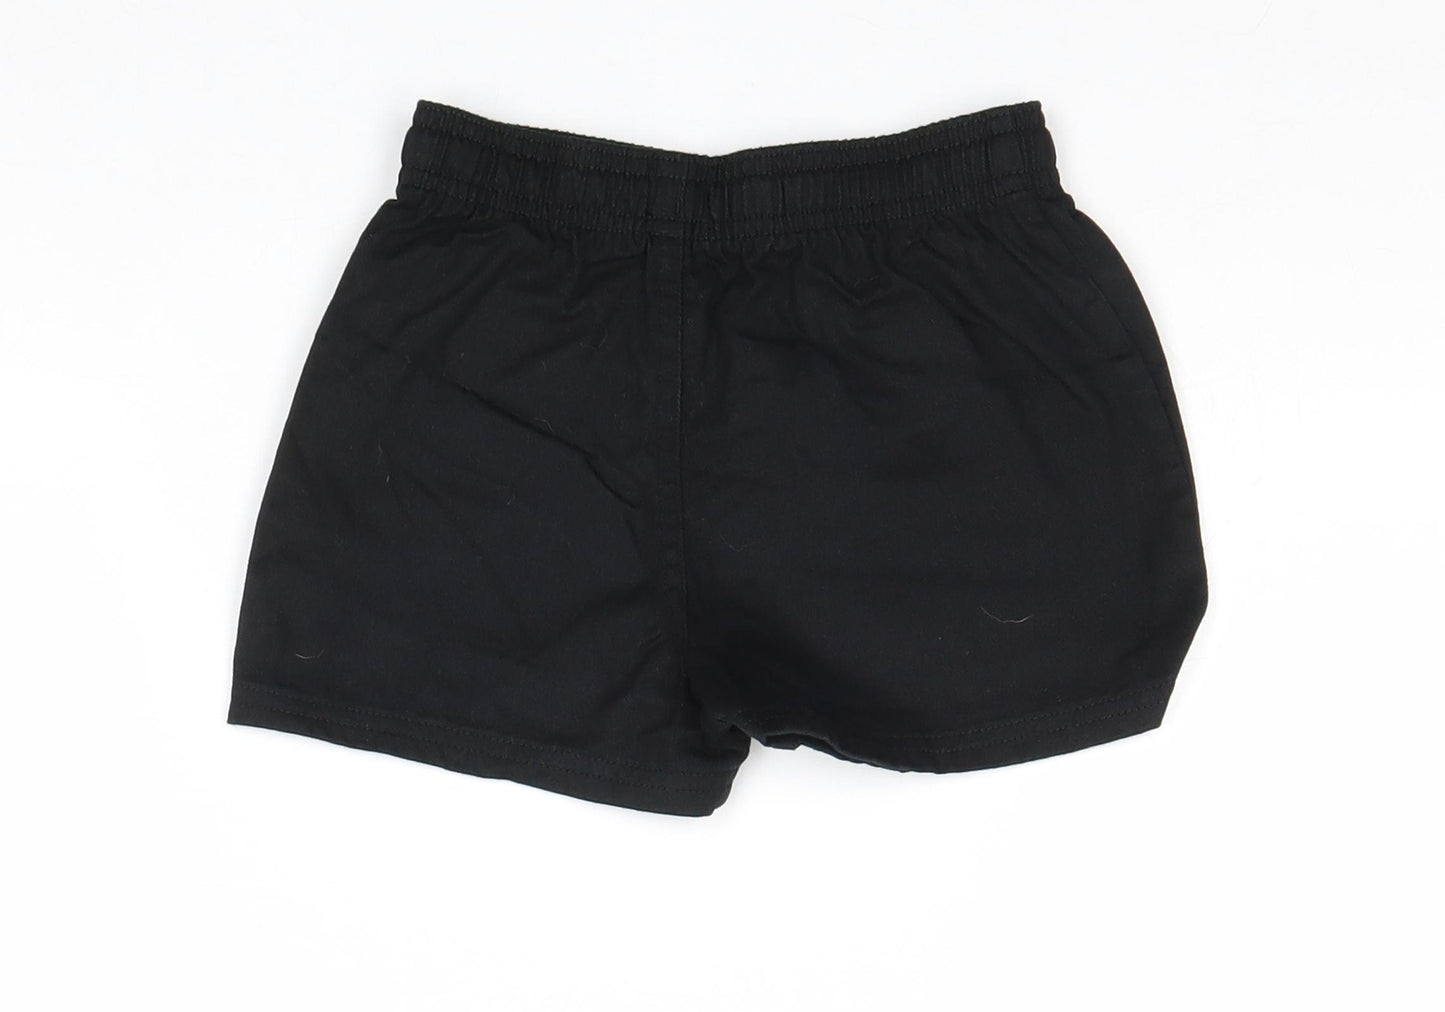 John Lewis Boys Black 100% Cotton Sweat Shorts Size 4-5 Years Regular Drawstring